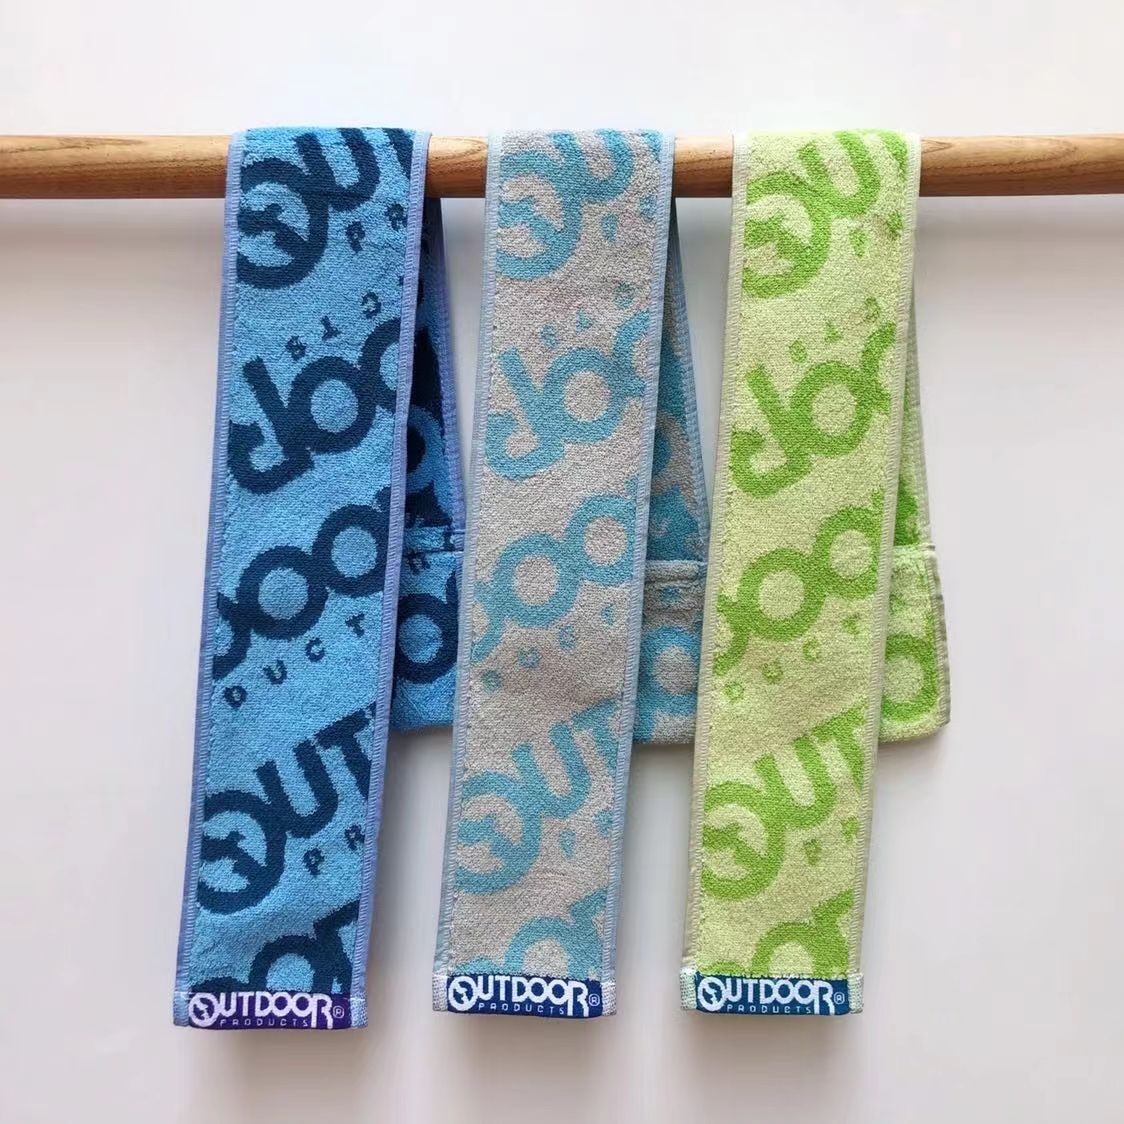 Asciugamani sportivi personalizzati in tessuto jacquard 100% cotone all'ingrosso della fabbrica cinese con logo